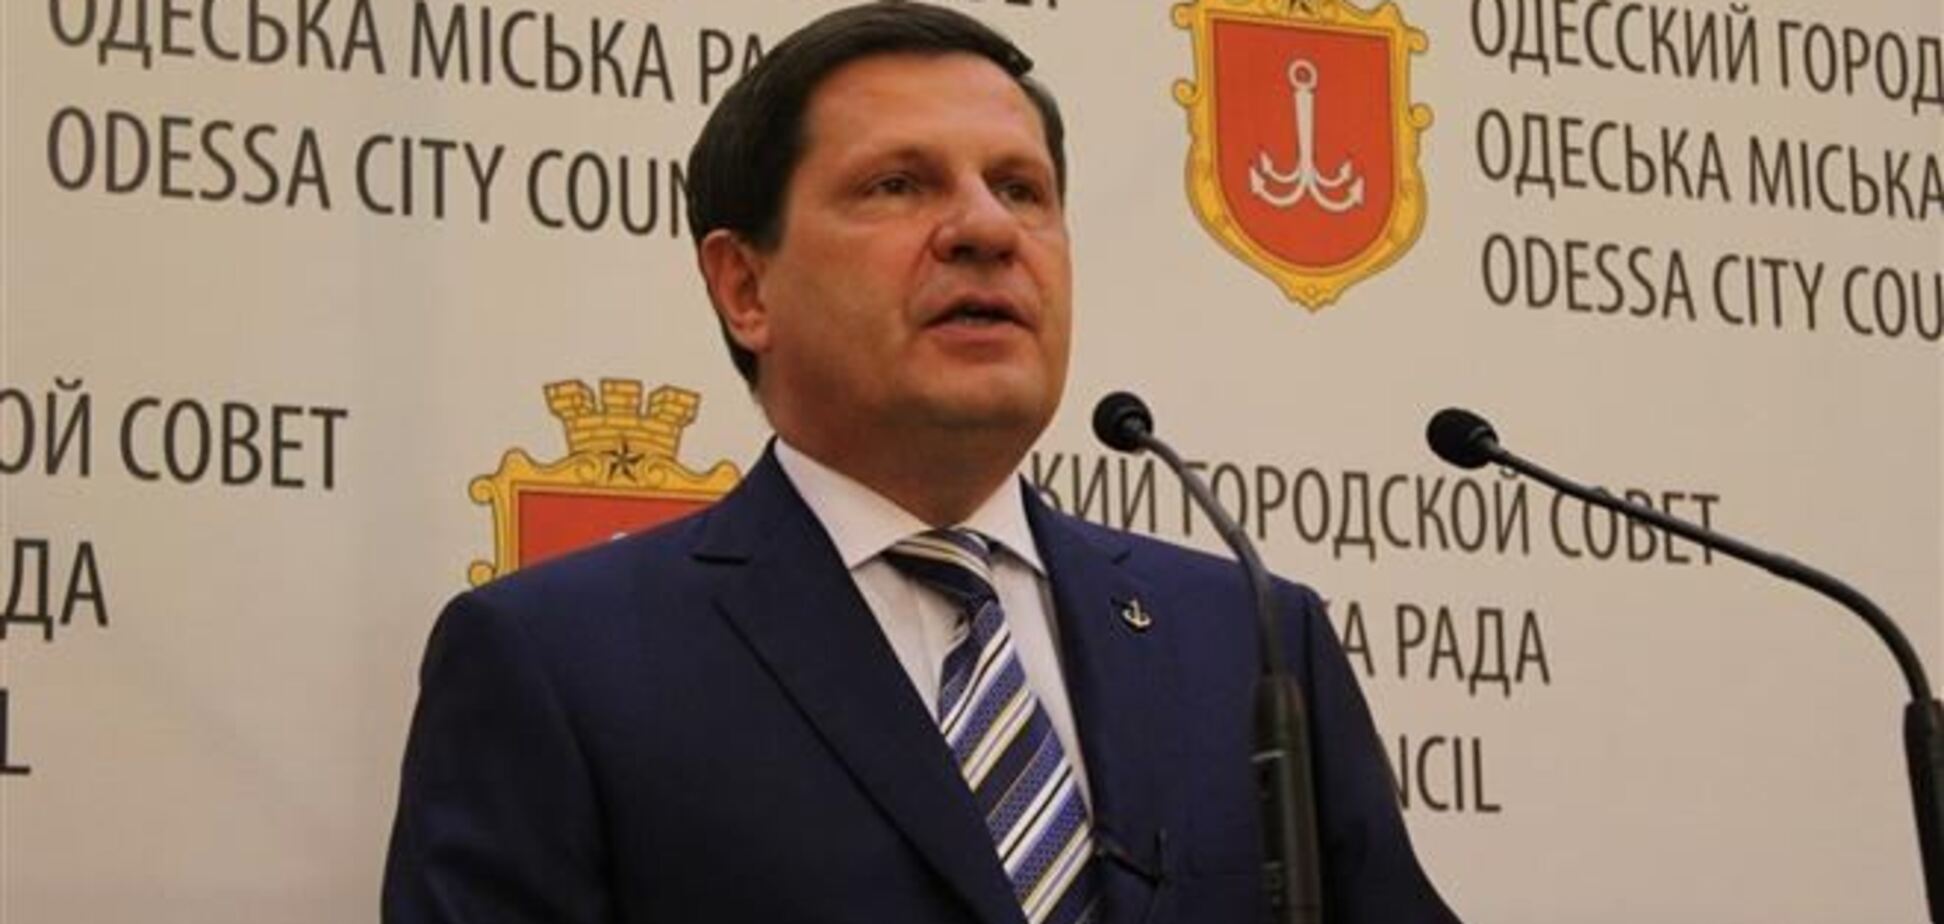 Экс-мэра Одессы Костусева объявили в розыск: подробности